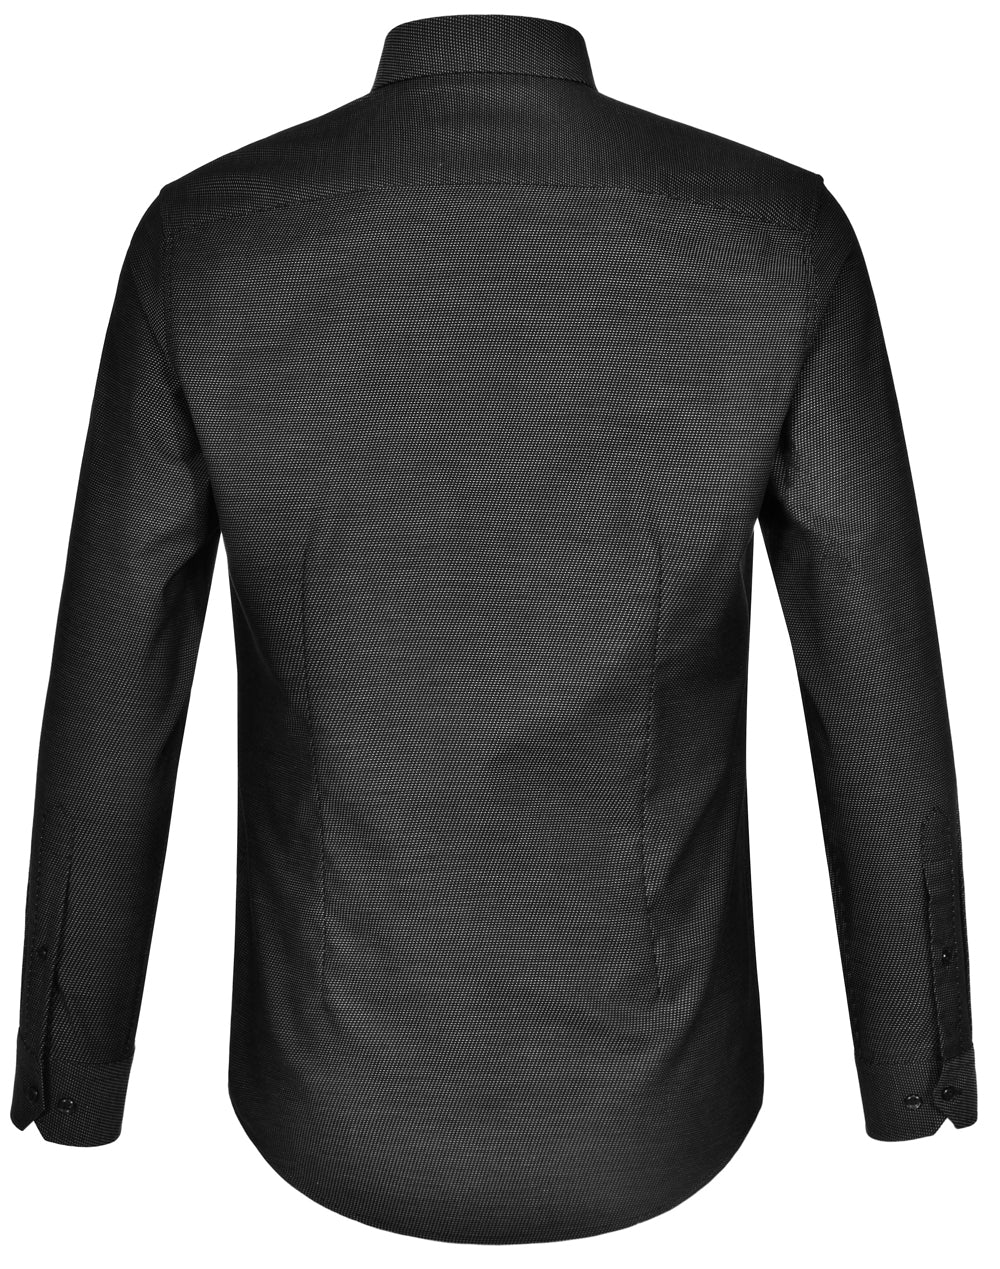 Winning Spirit-Ascot Mens Long Sleeve Dot  Jacquard Stretch Shirt-M7400L